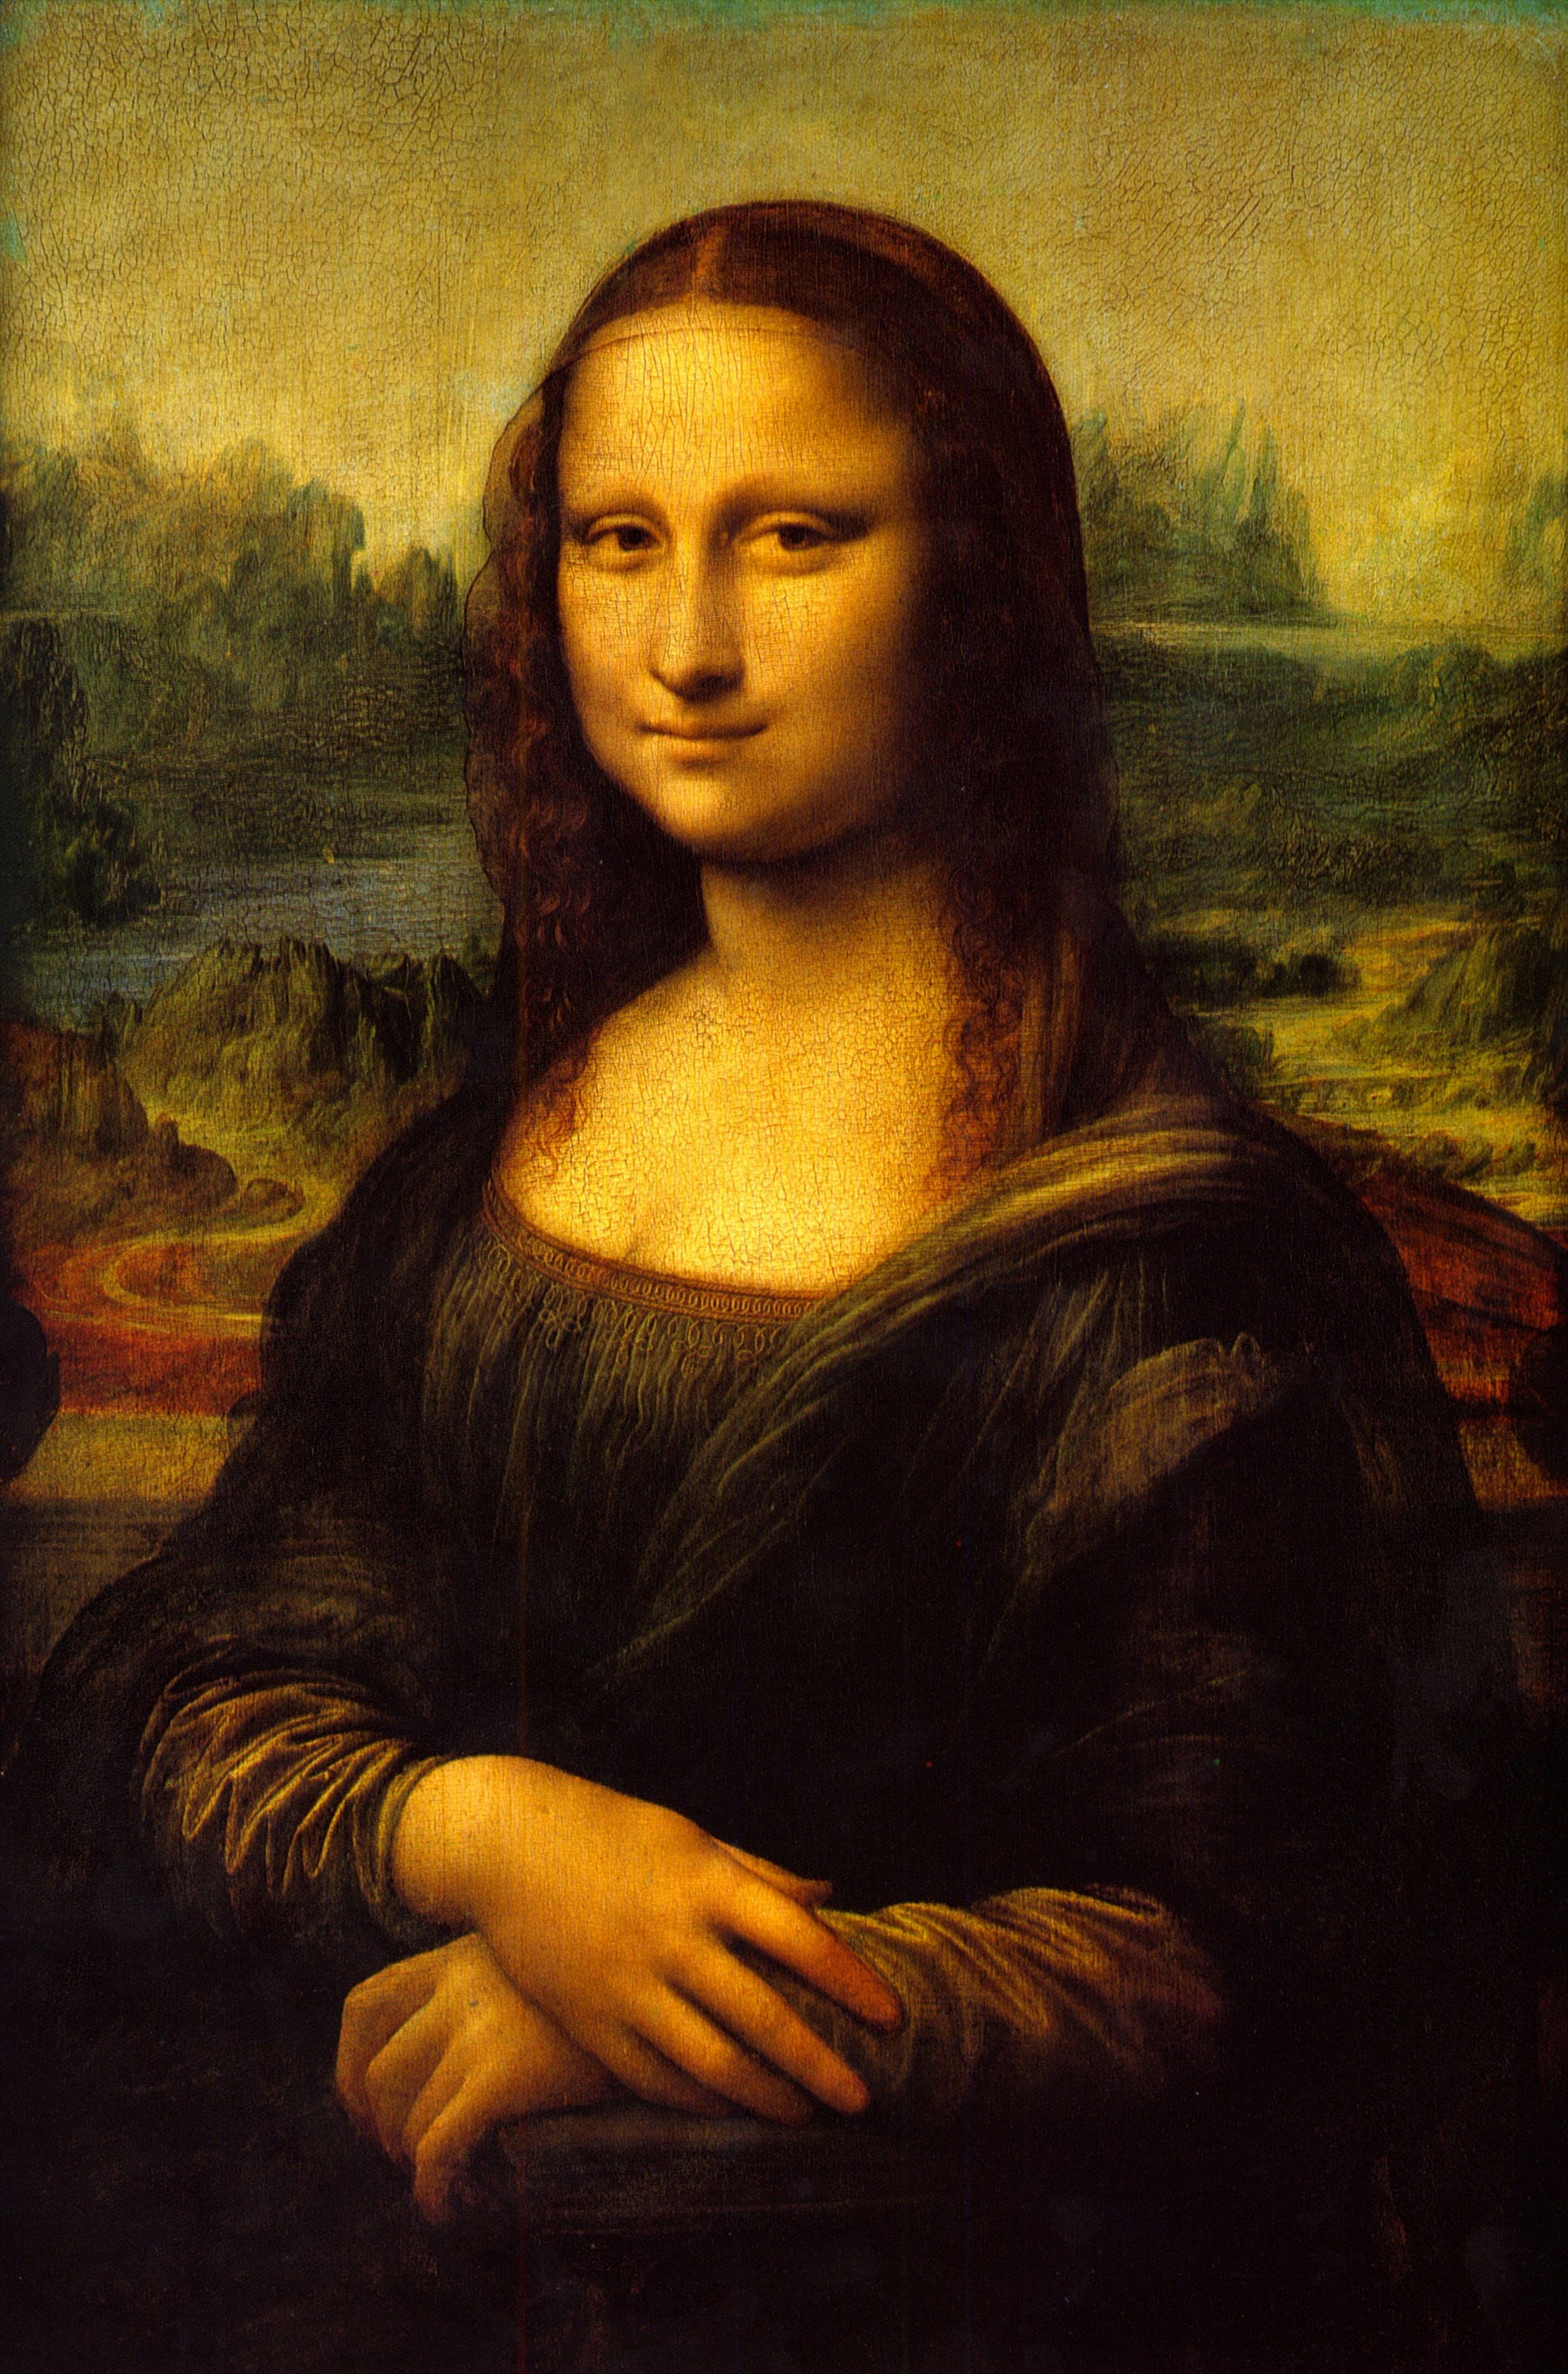 Mona Lisa Had Eyebrows - Daniel Voshart - Medium